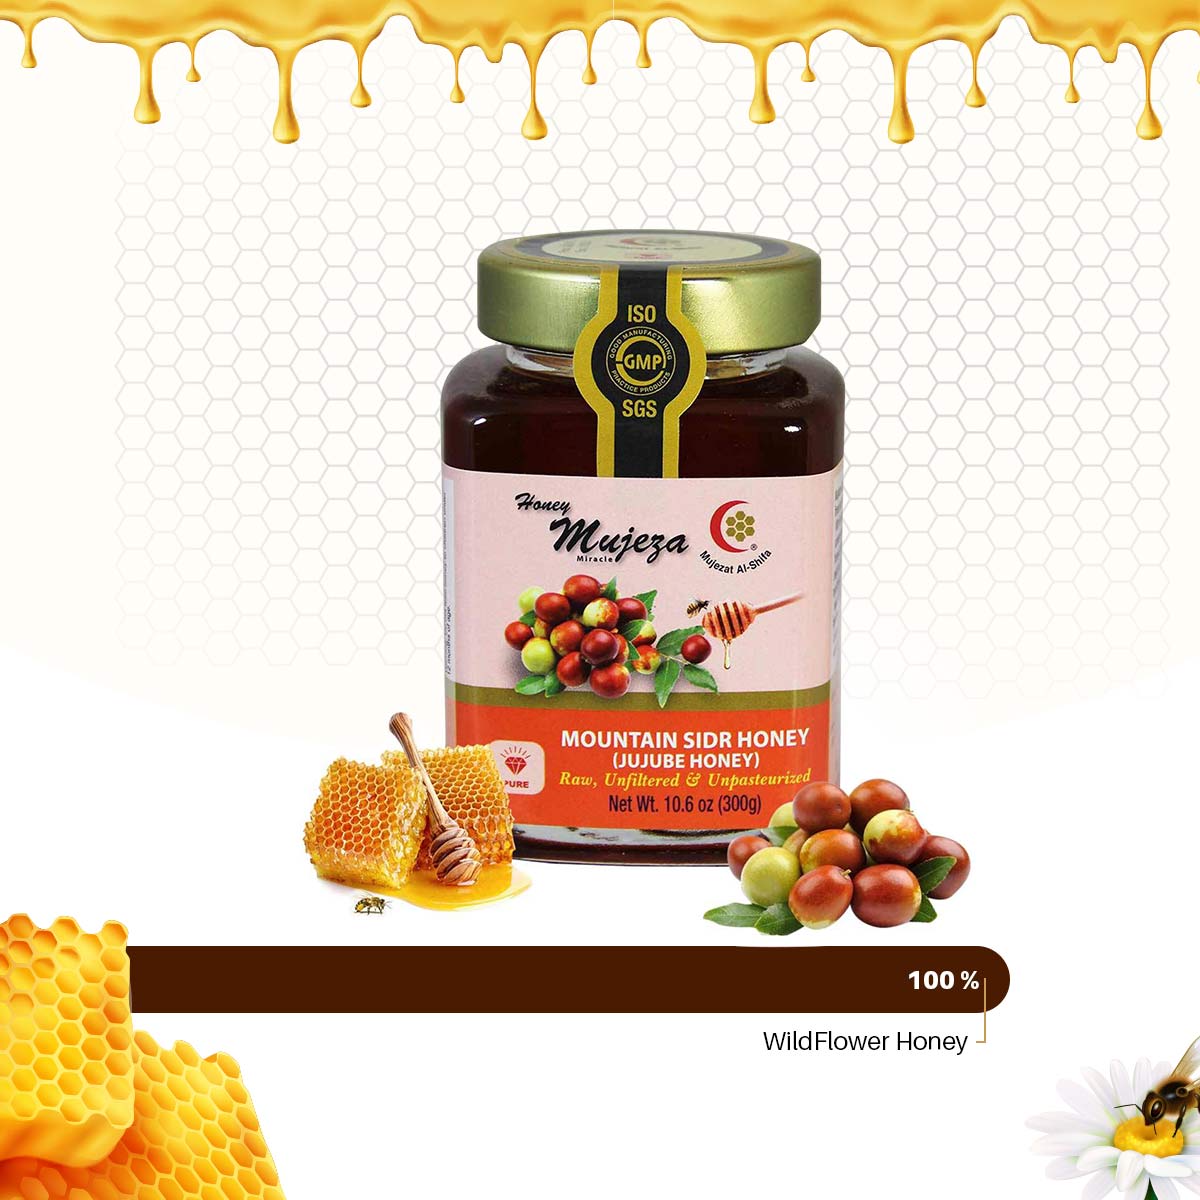 Pure Mountain Sidr Honey Jar " Jujube Honey " - 500g - عسل السدر الجبلي الصافي - Mujeza Honey